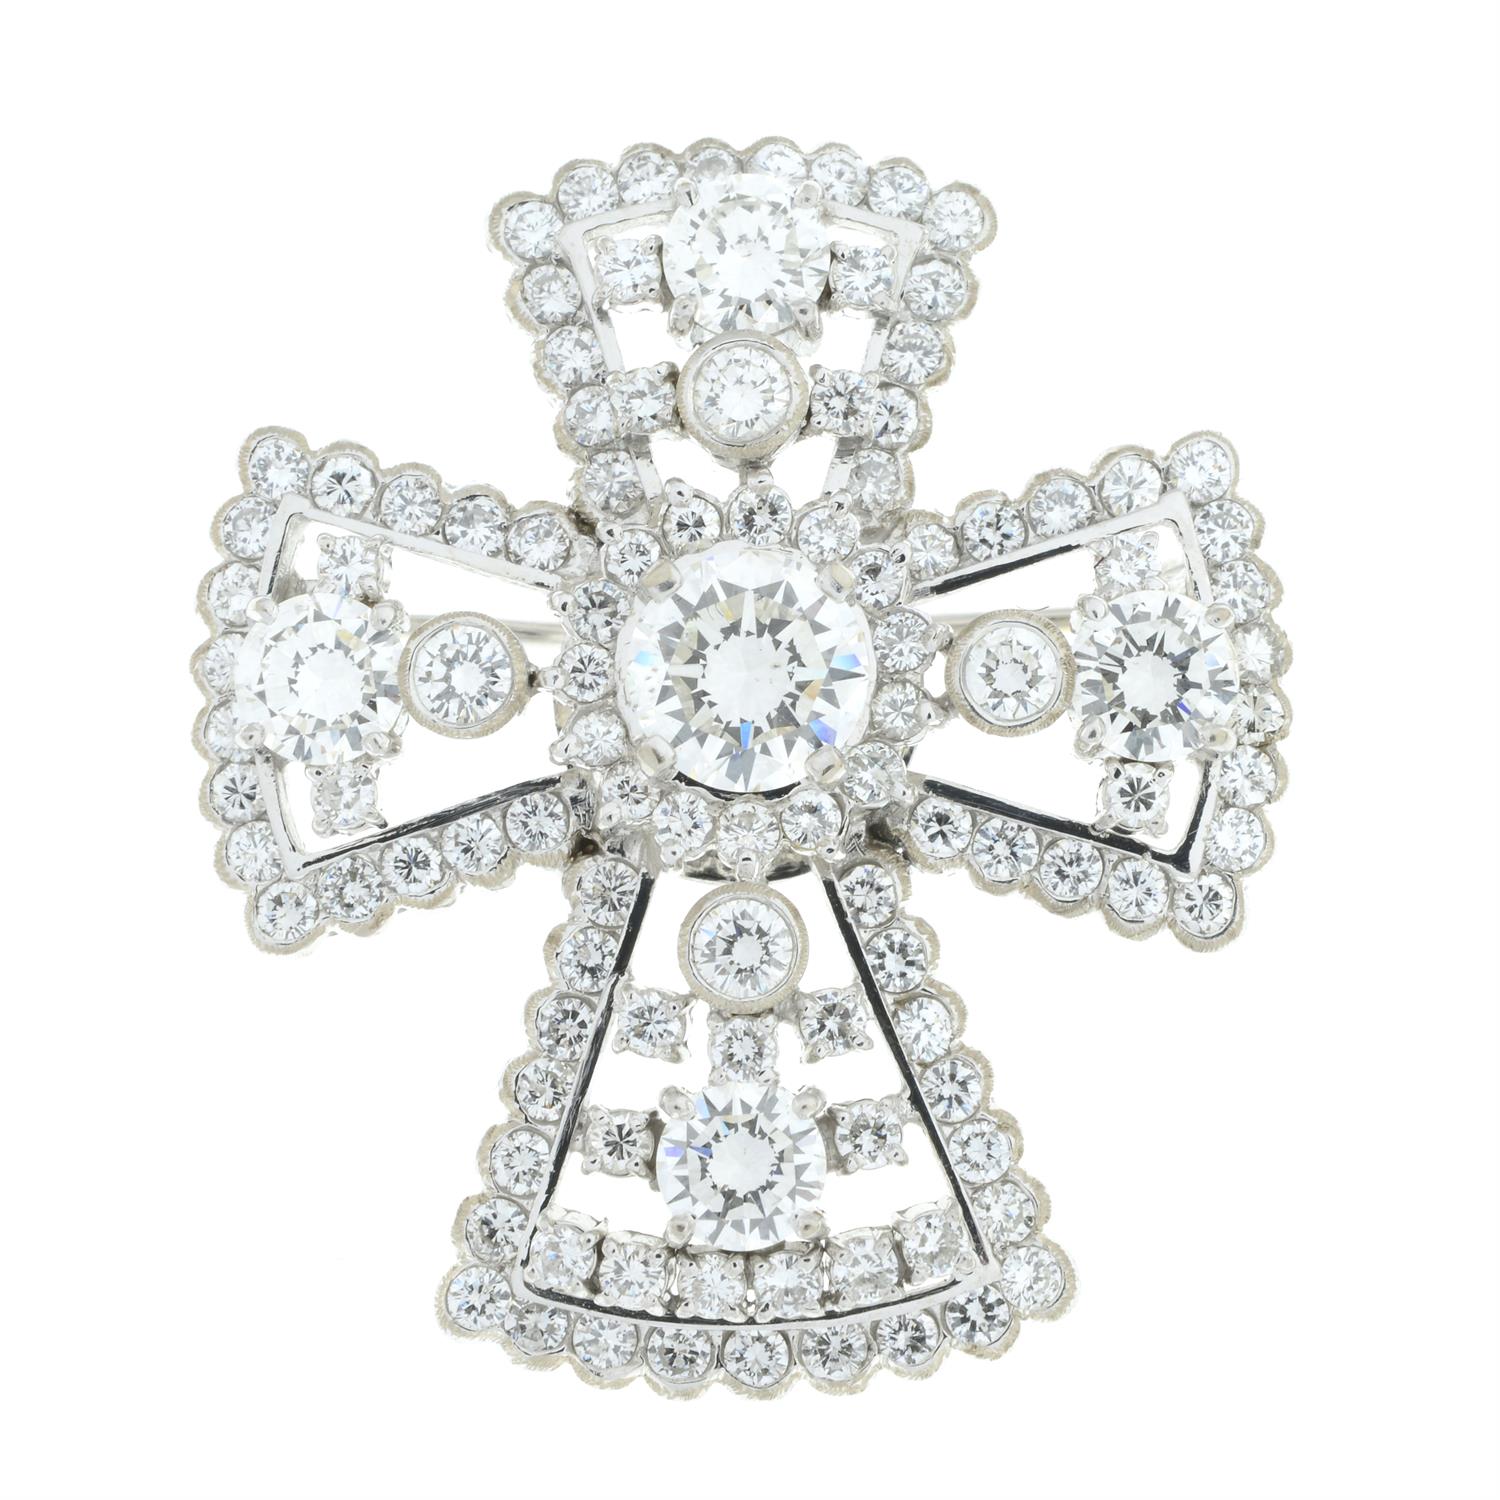 Diamond cross brooch - Image 2 of 4